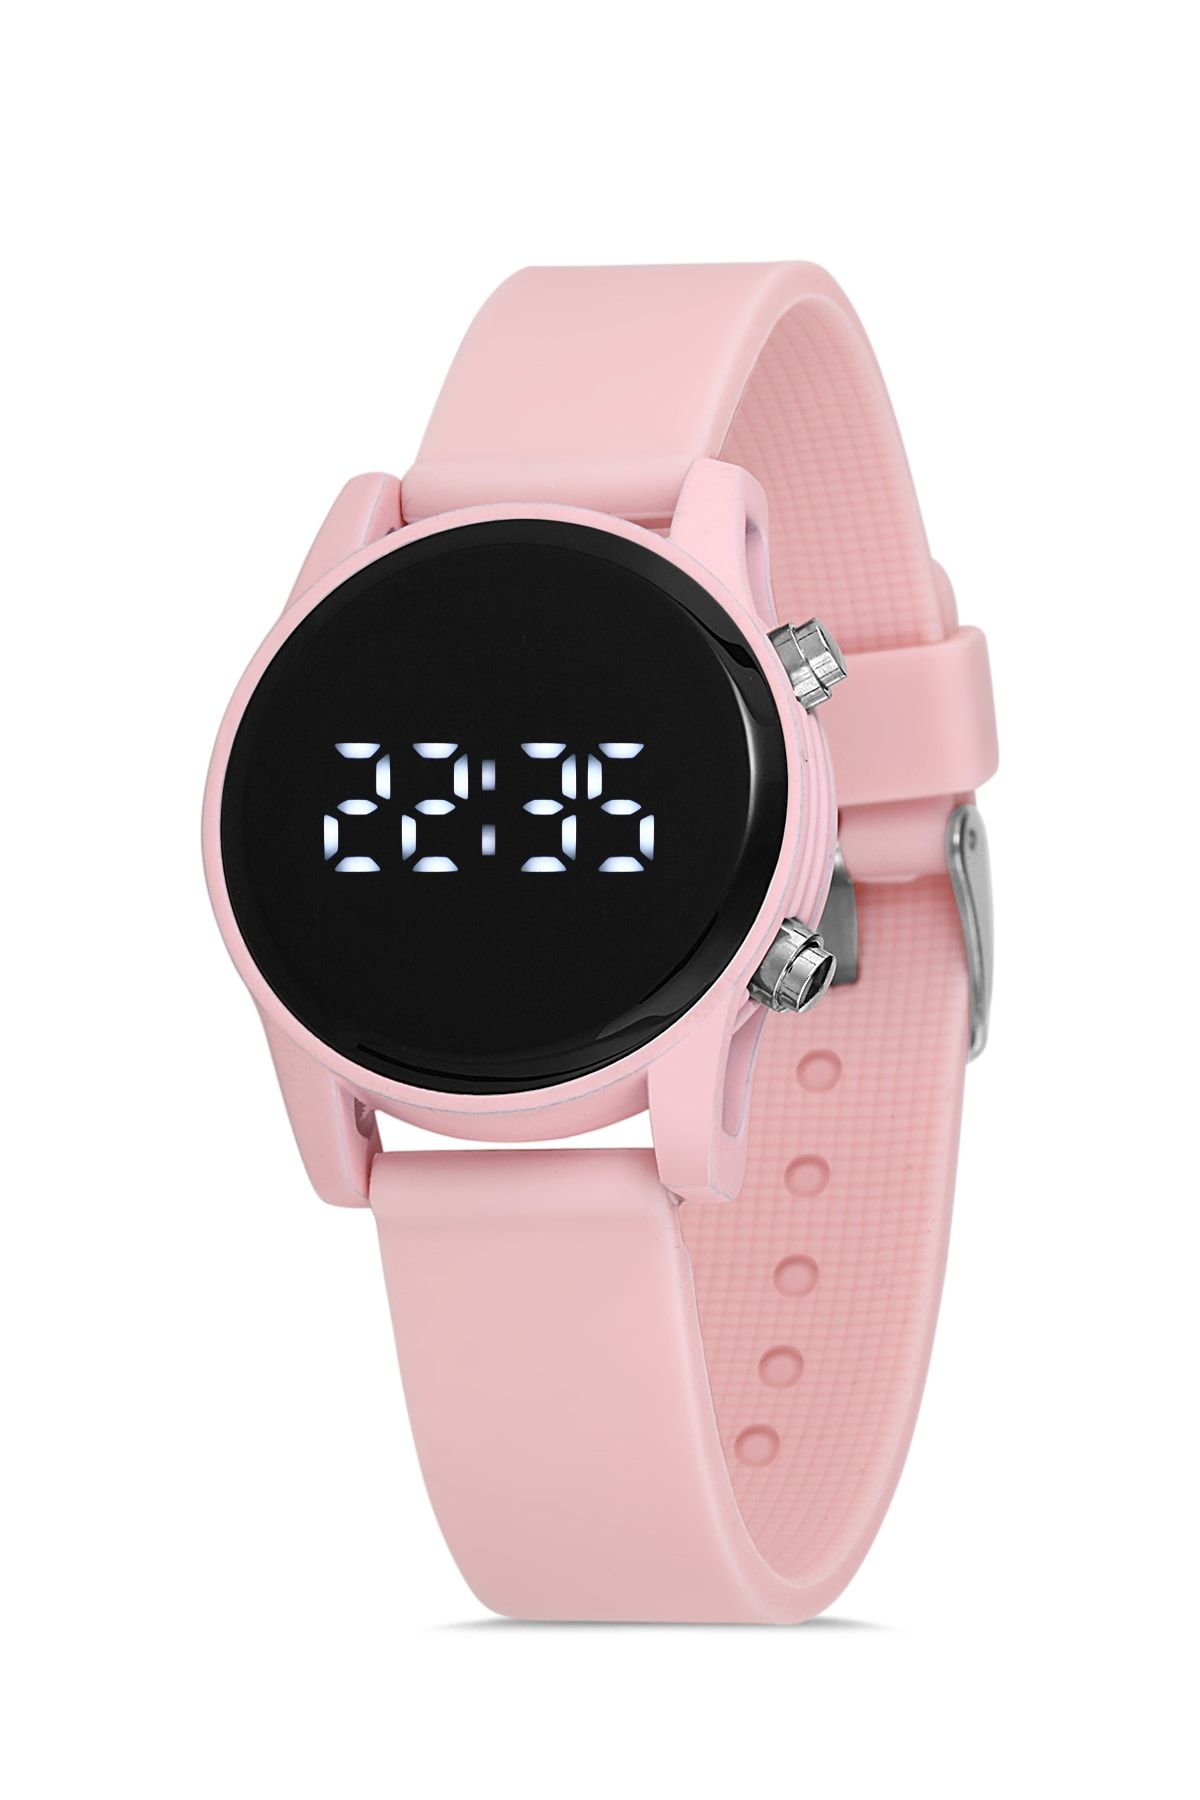 Men's Watches | Men's Digital Watches - Kmart